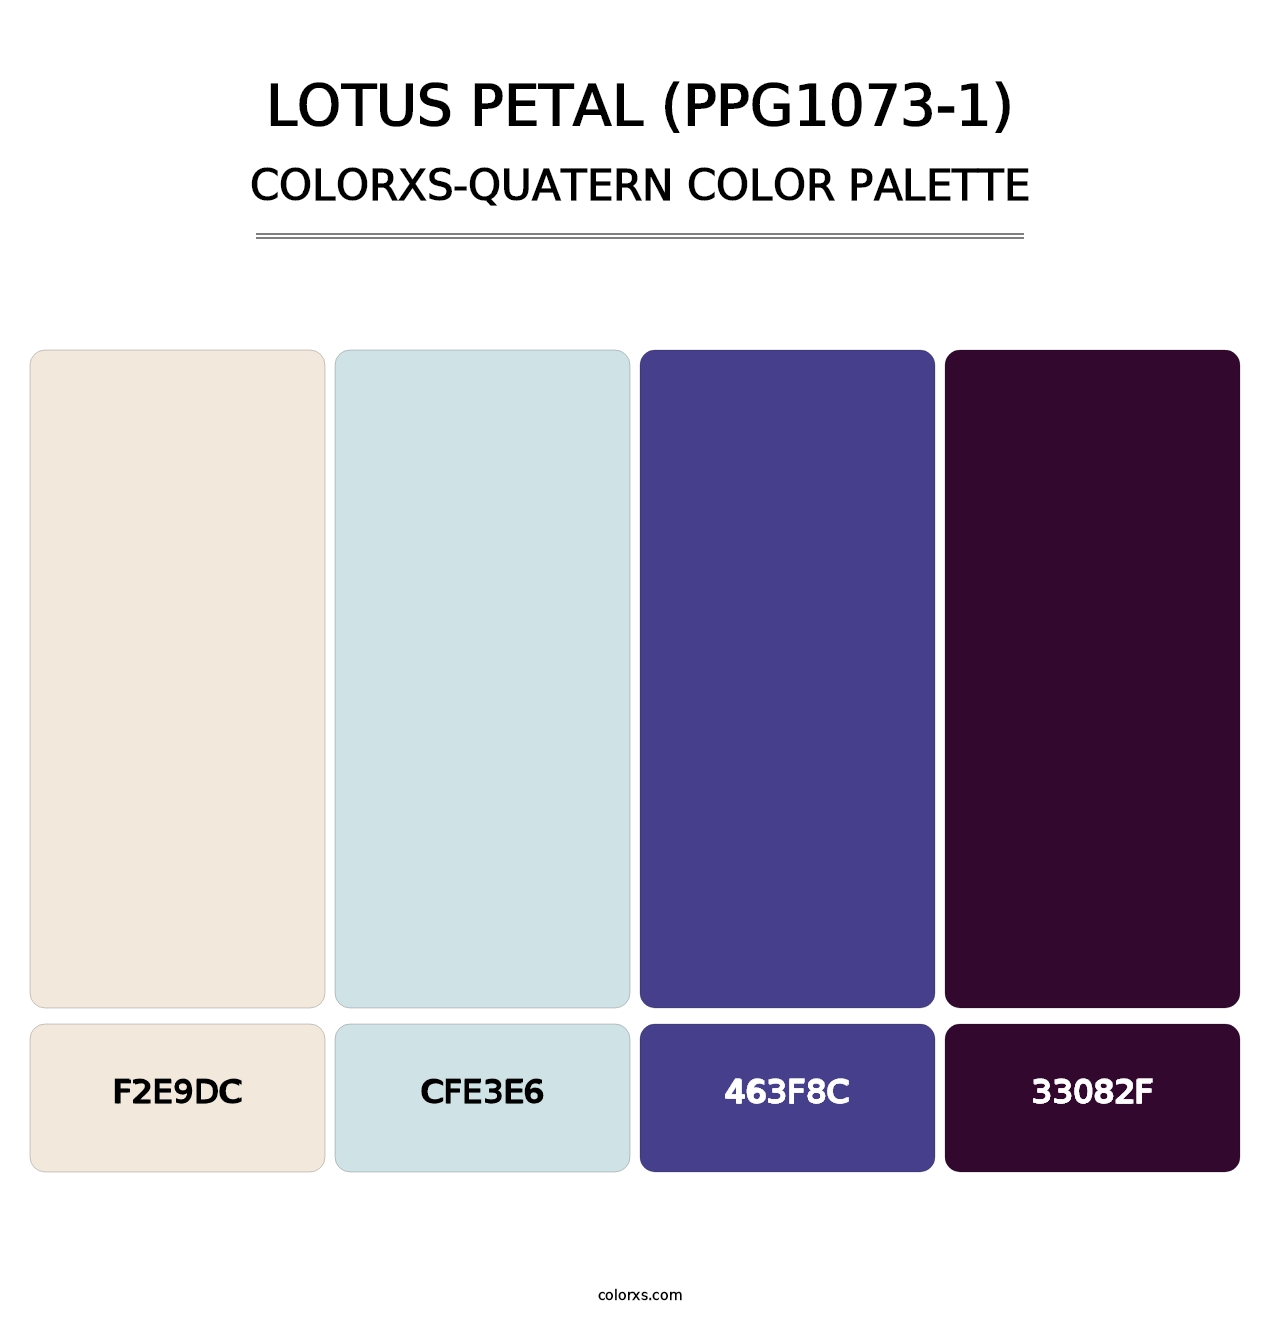 Lotus Petal (PPG1073-1) - Colorxs Quatern Palette